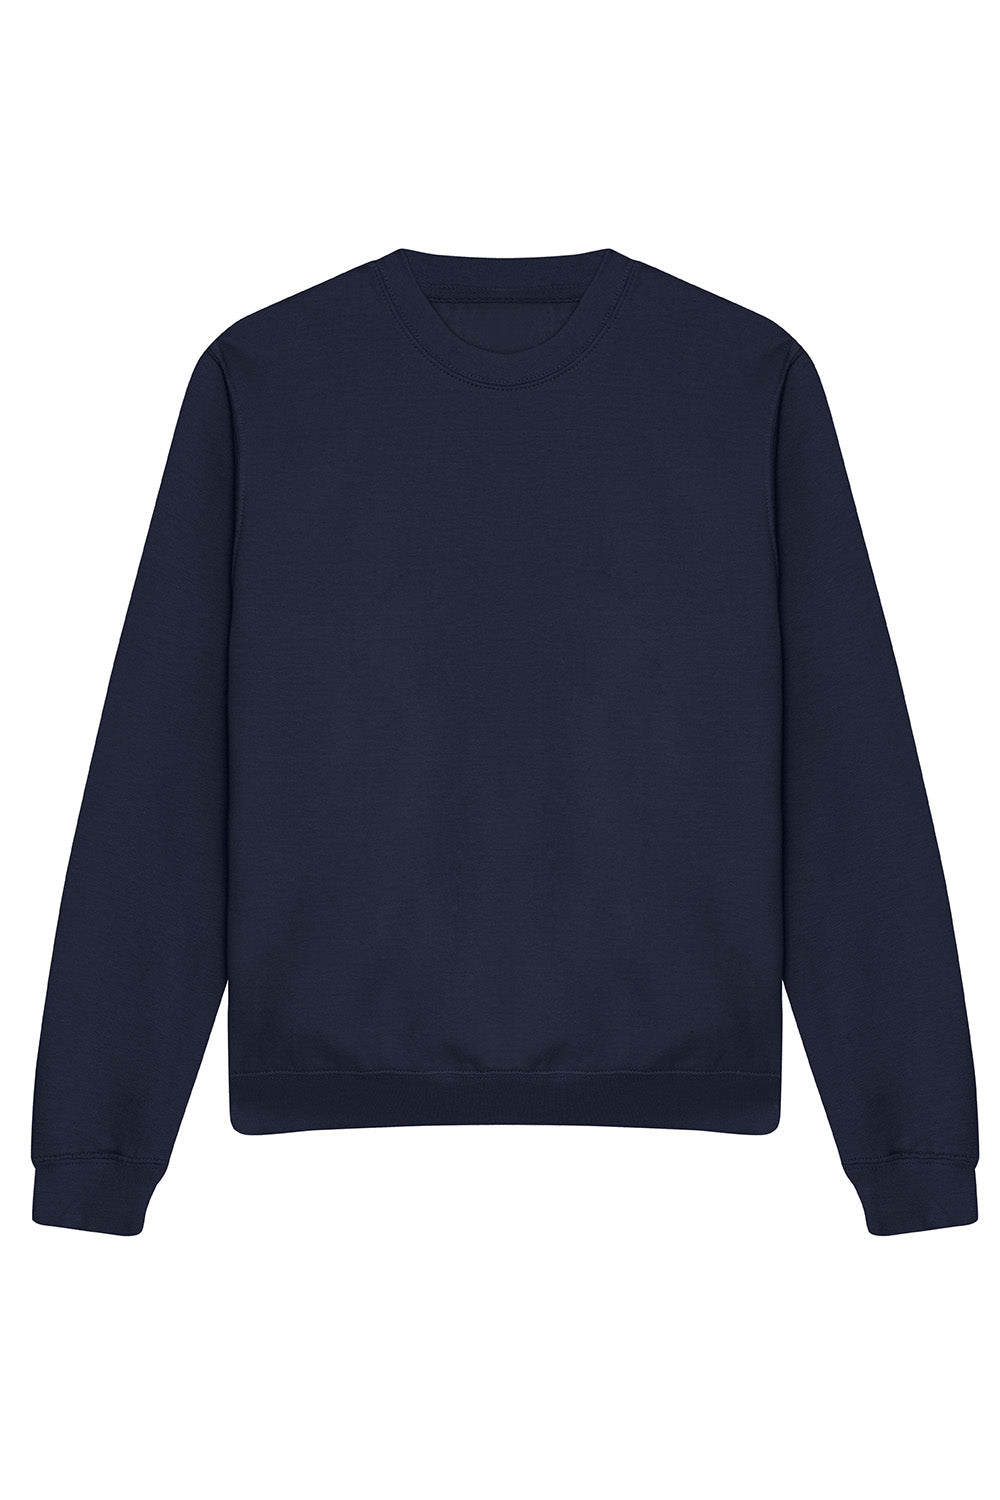 Plain Sweatshirt In Oxford Navy (Single).